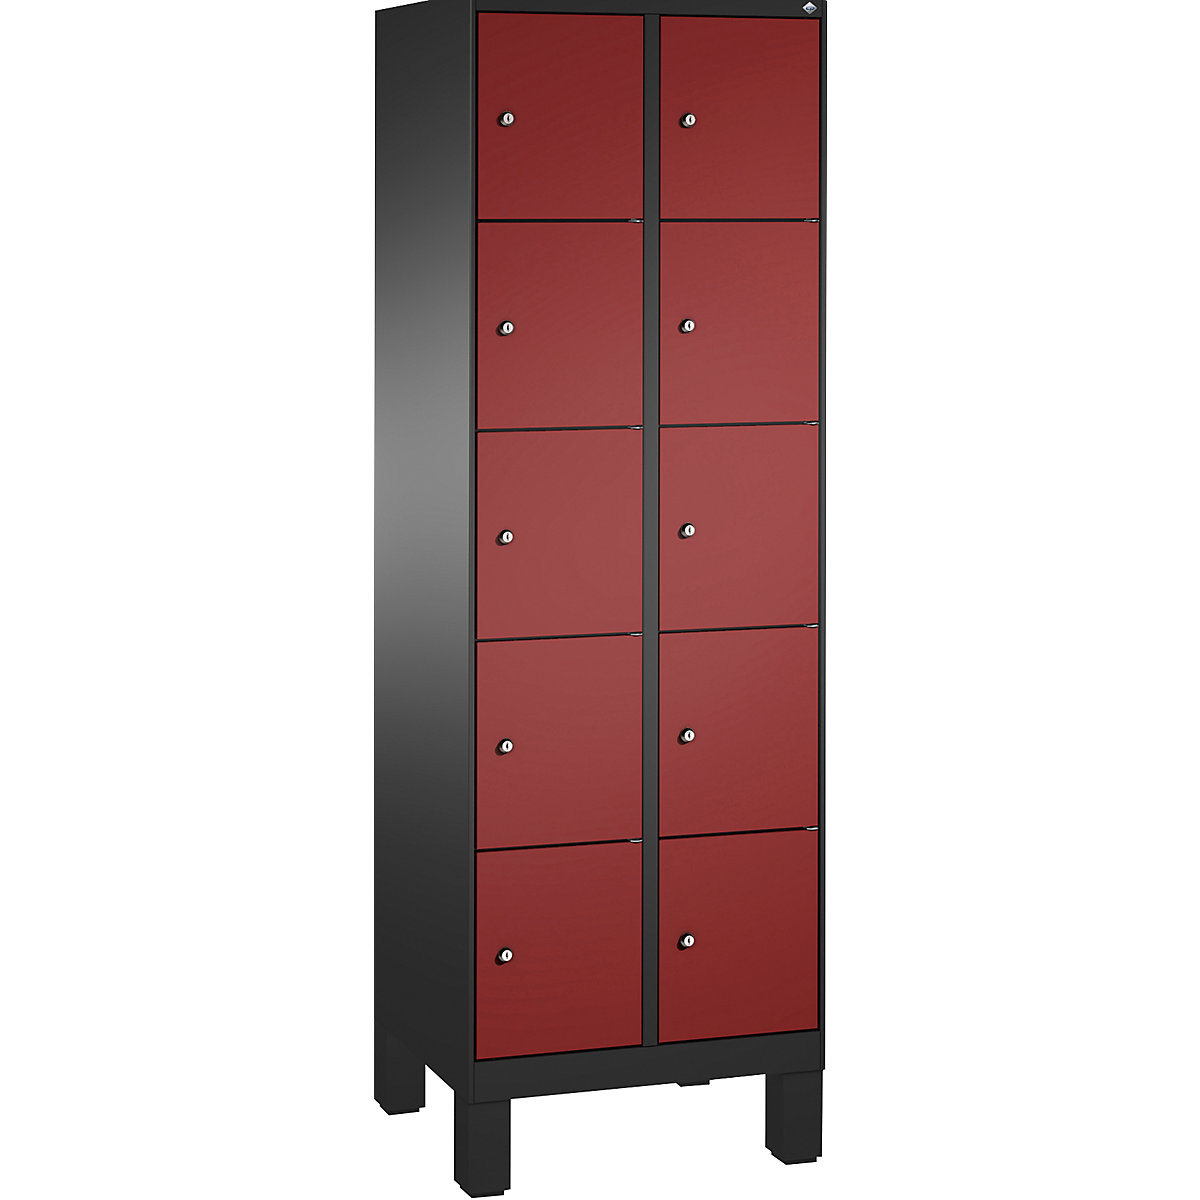 Armoire à casiers sur pieds EVOLO – C+P, 2 compartiments, 5 casiers chacun, largeur compartiments 300 mm, gris noir / rouge rubis-15